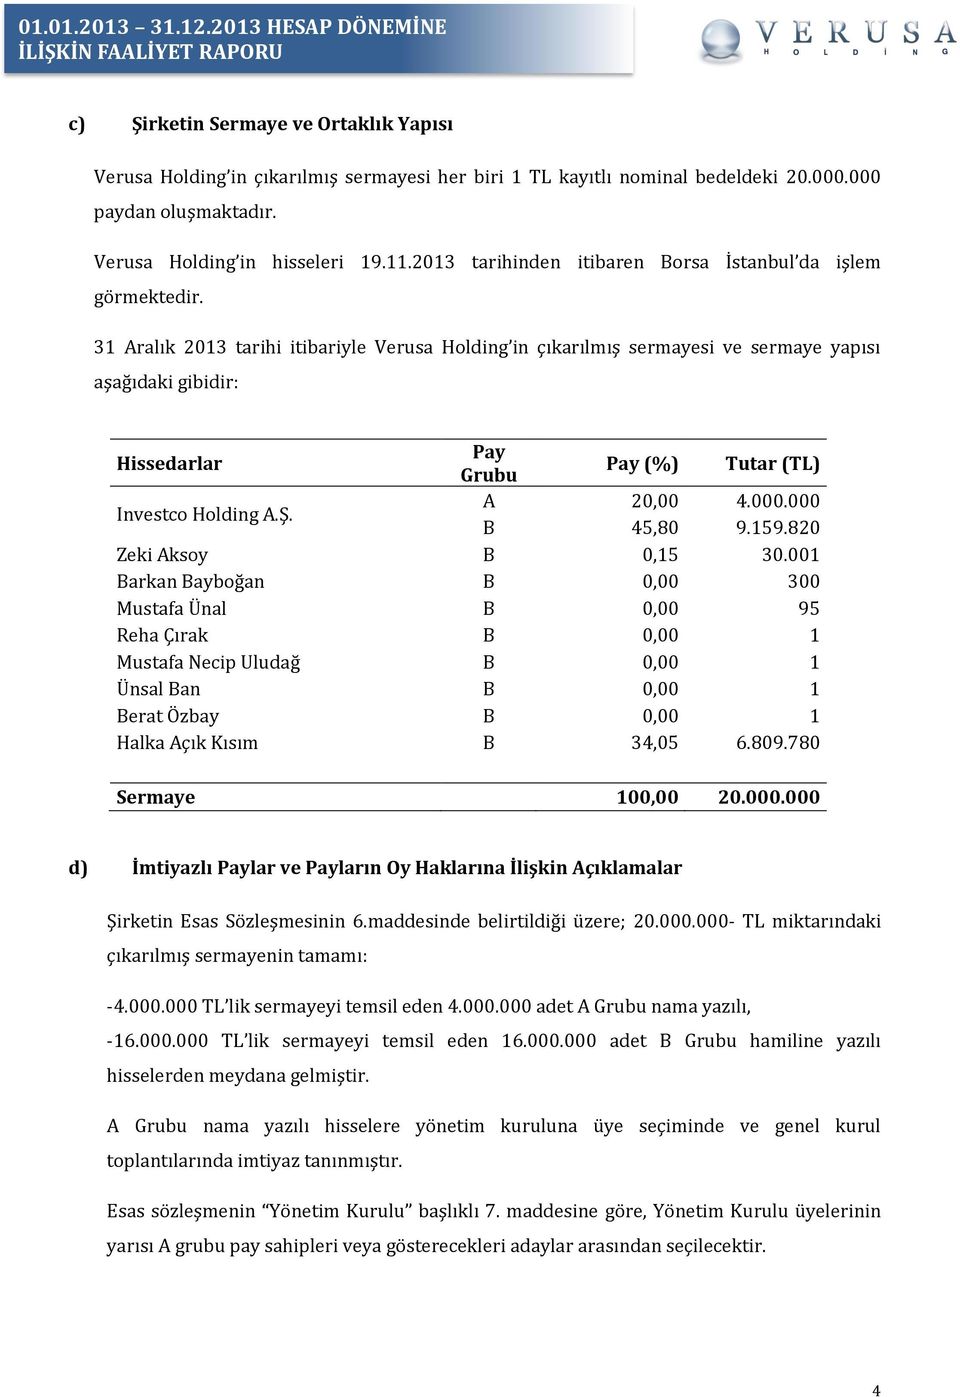 31 Aralık 2013 tarihi itibariyle Verusa Holding in çıkarılmış sermayesi ve sermaye yapısı aşağıdaki gibidir: Hissedarlar Pay Grubu Pay (%) Tutar (TL) Investco Holding A.Ş. A 20,00 4.000.000 B 45,80 9.